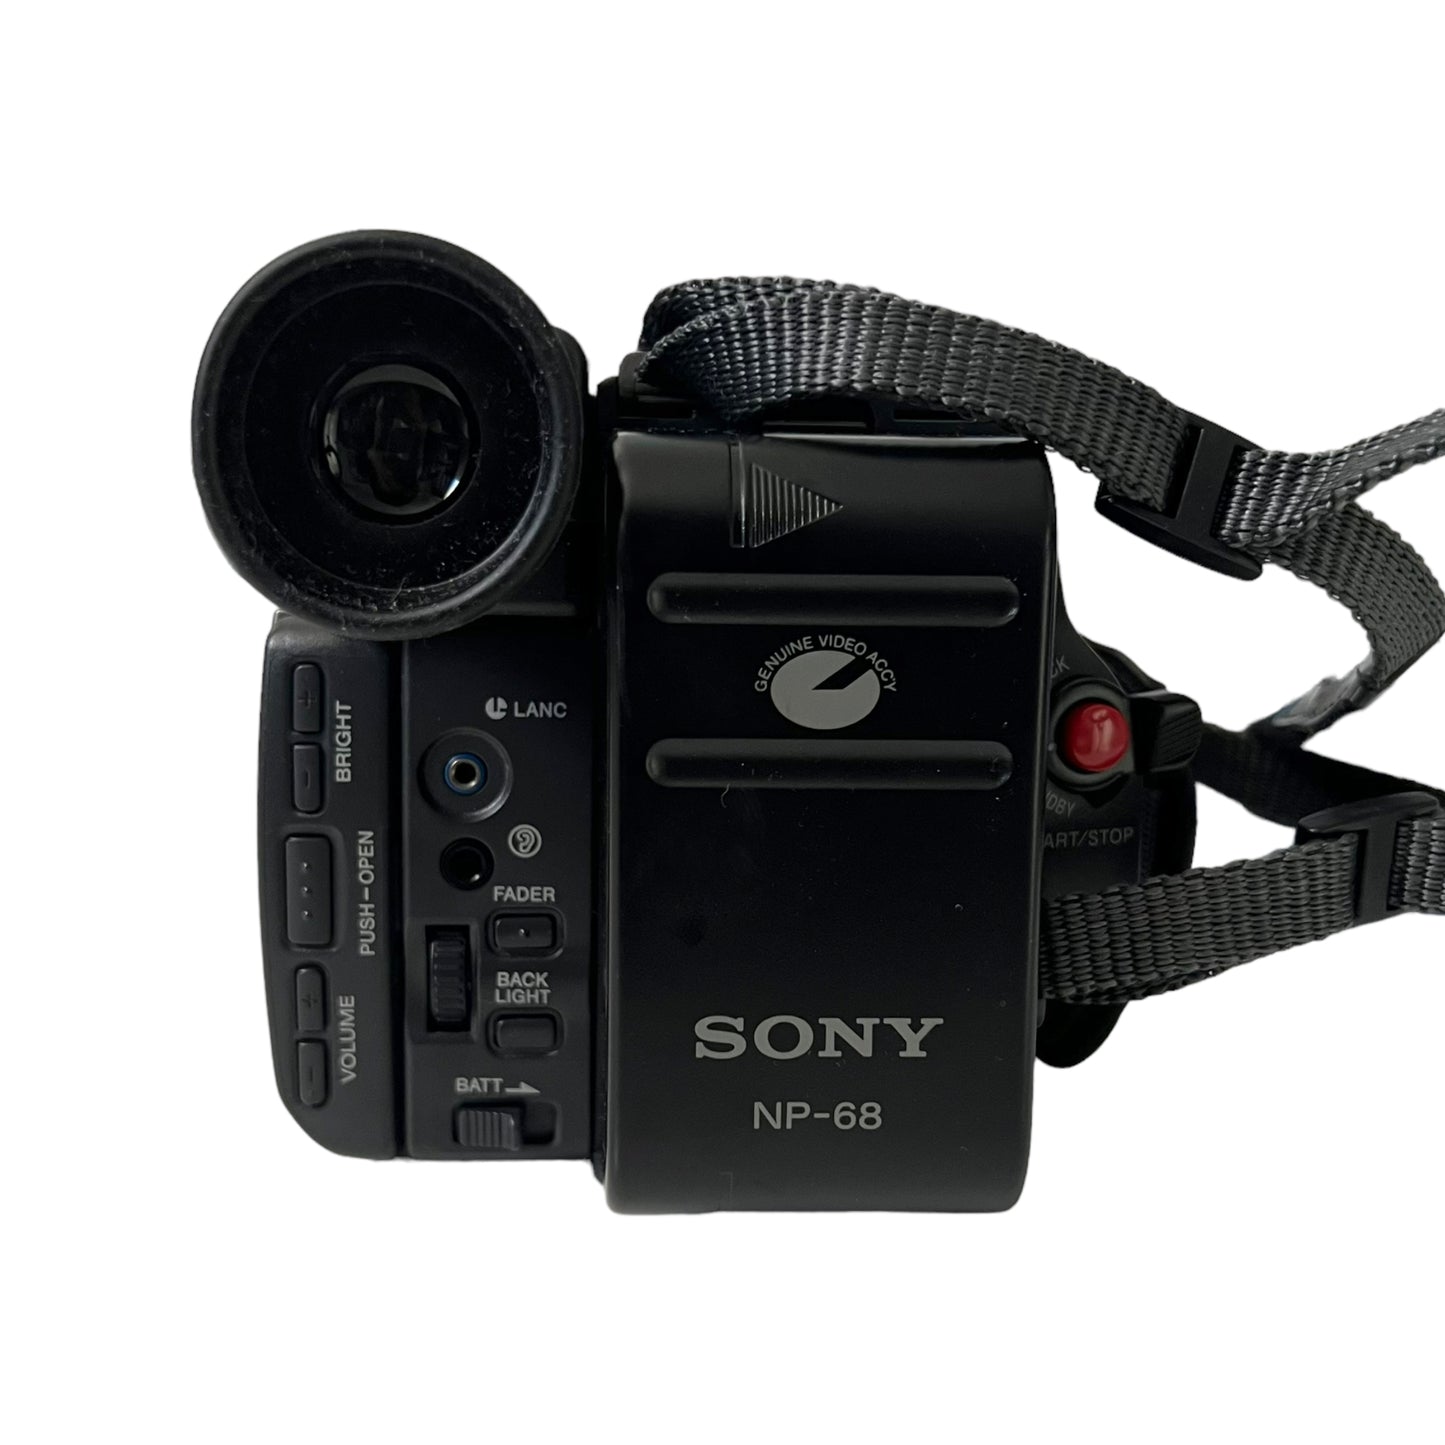 Sony TRV32 Hi8 Camcorder